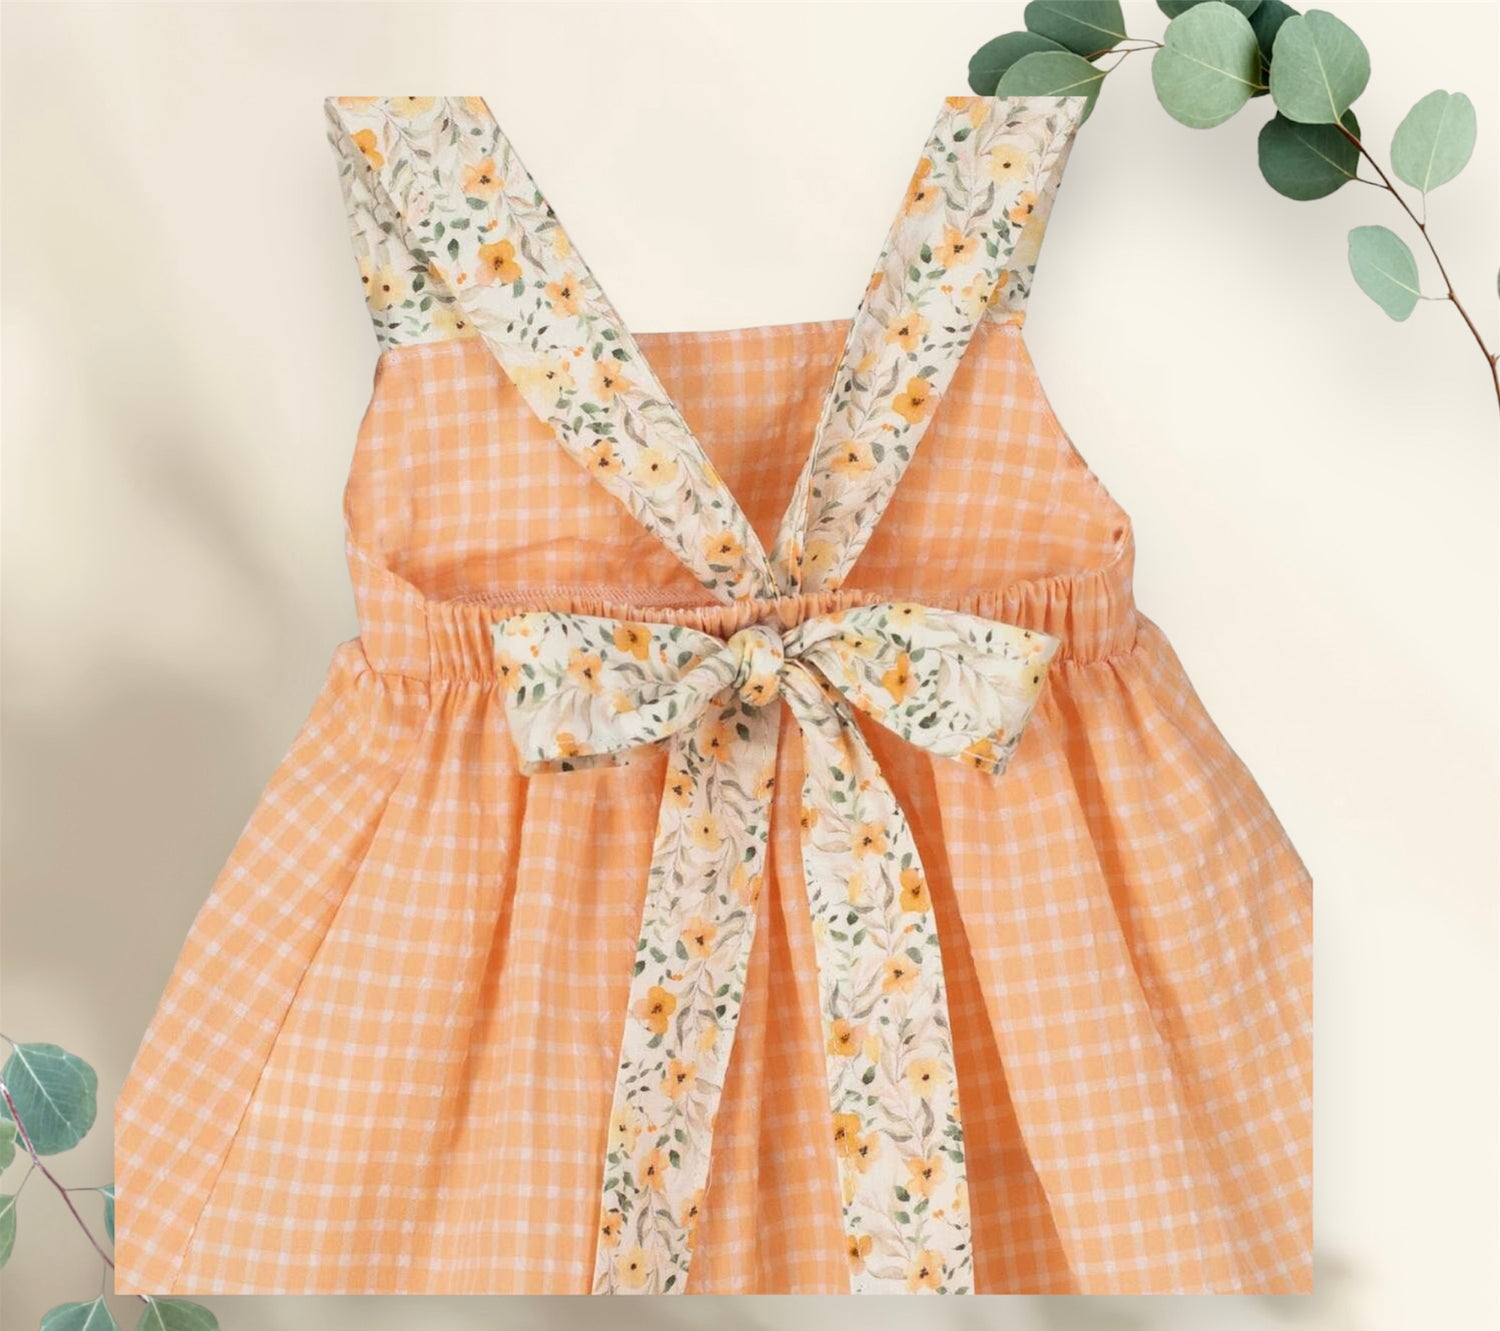 Comprar vestido Pimpinela de la marca Calamaro. Color mandarina. Vichy combinado con flores. Temporada primavera-verano.